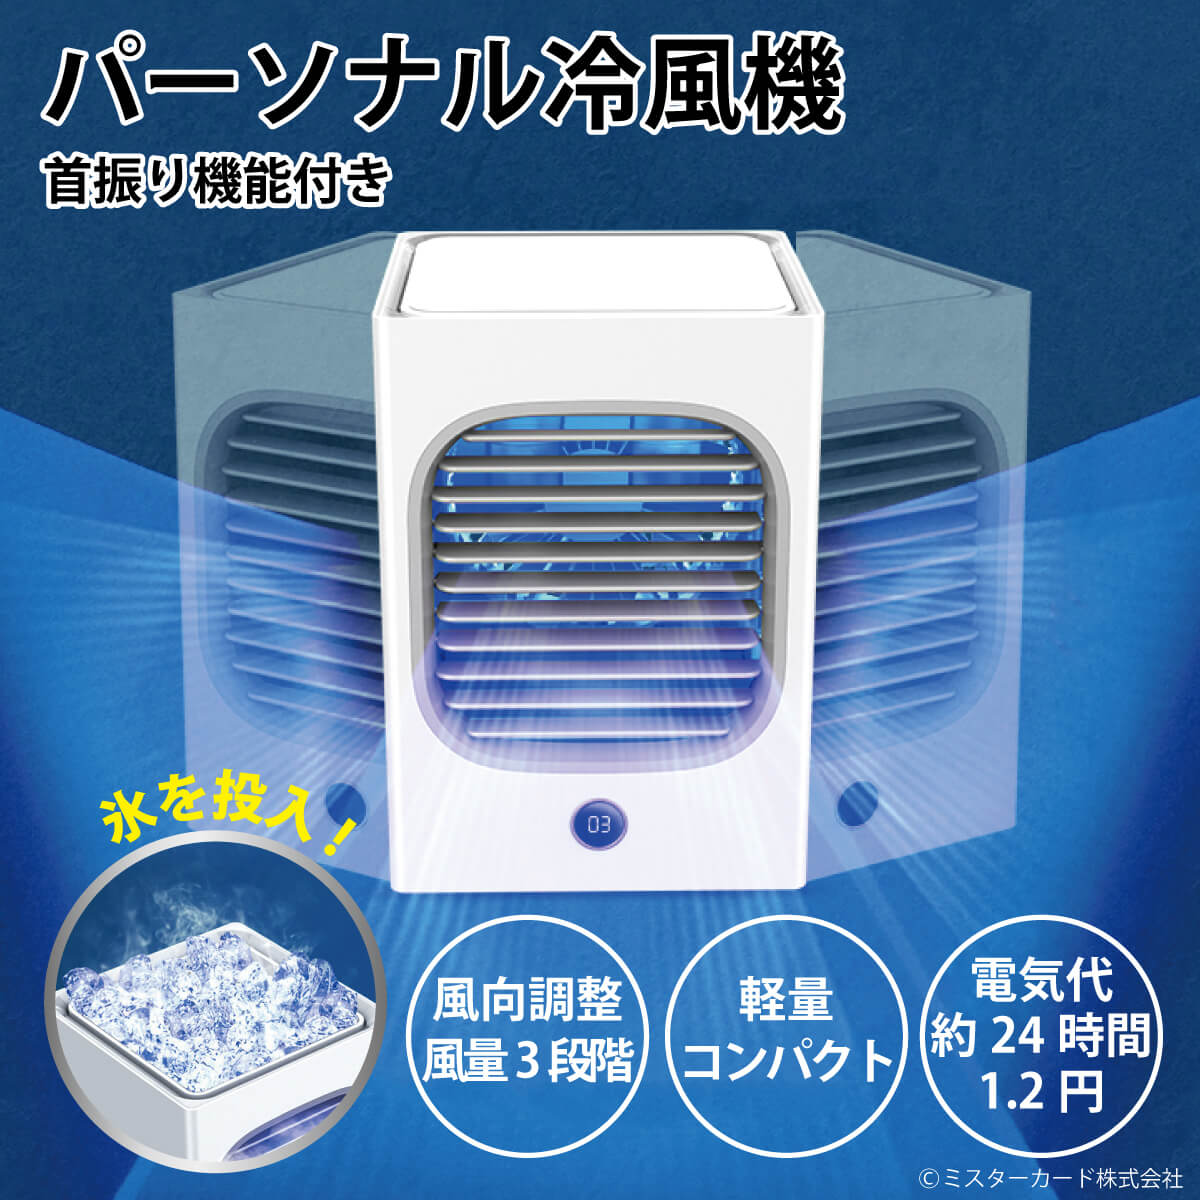 パーソナル冷風機 首振り機能付き エアコン 冷風機 加湿 省エネ 低騒音 アウトドア 熱中症対策 軽量 コンパクト 日本語マニュアル付き MR-WTFN02-WH